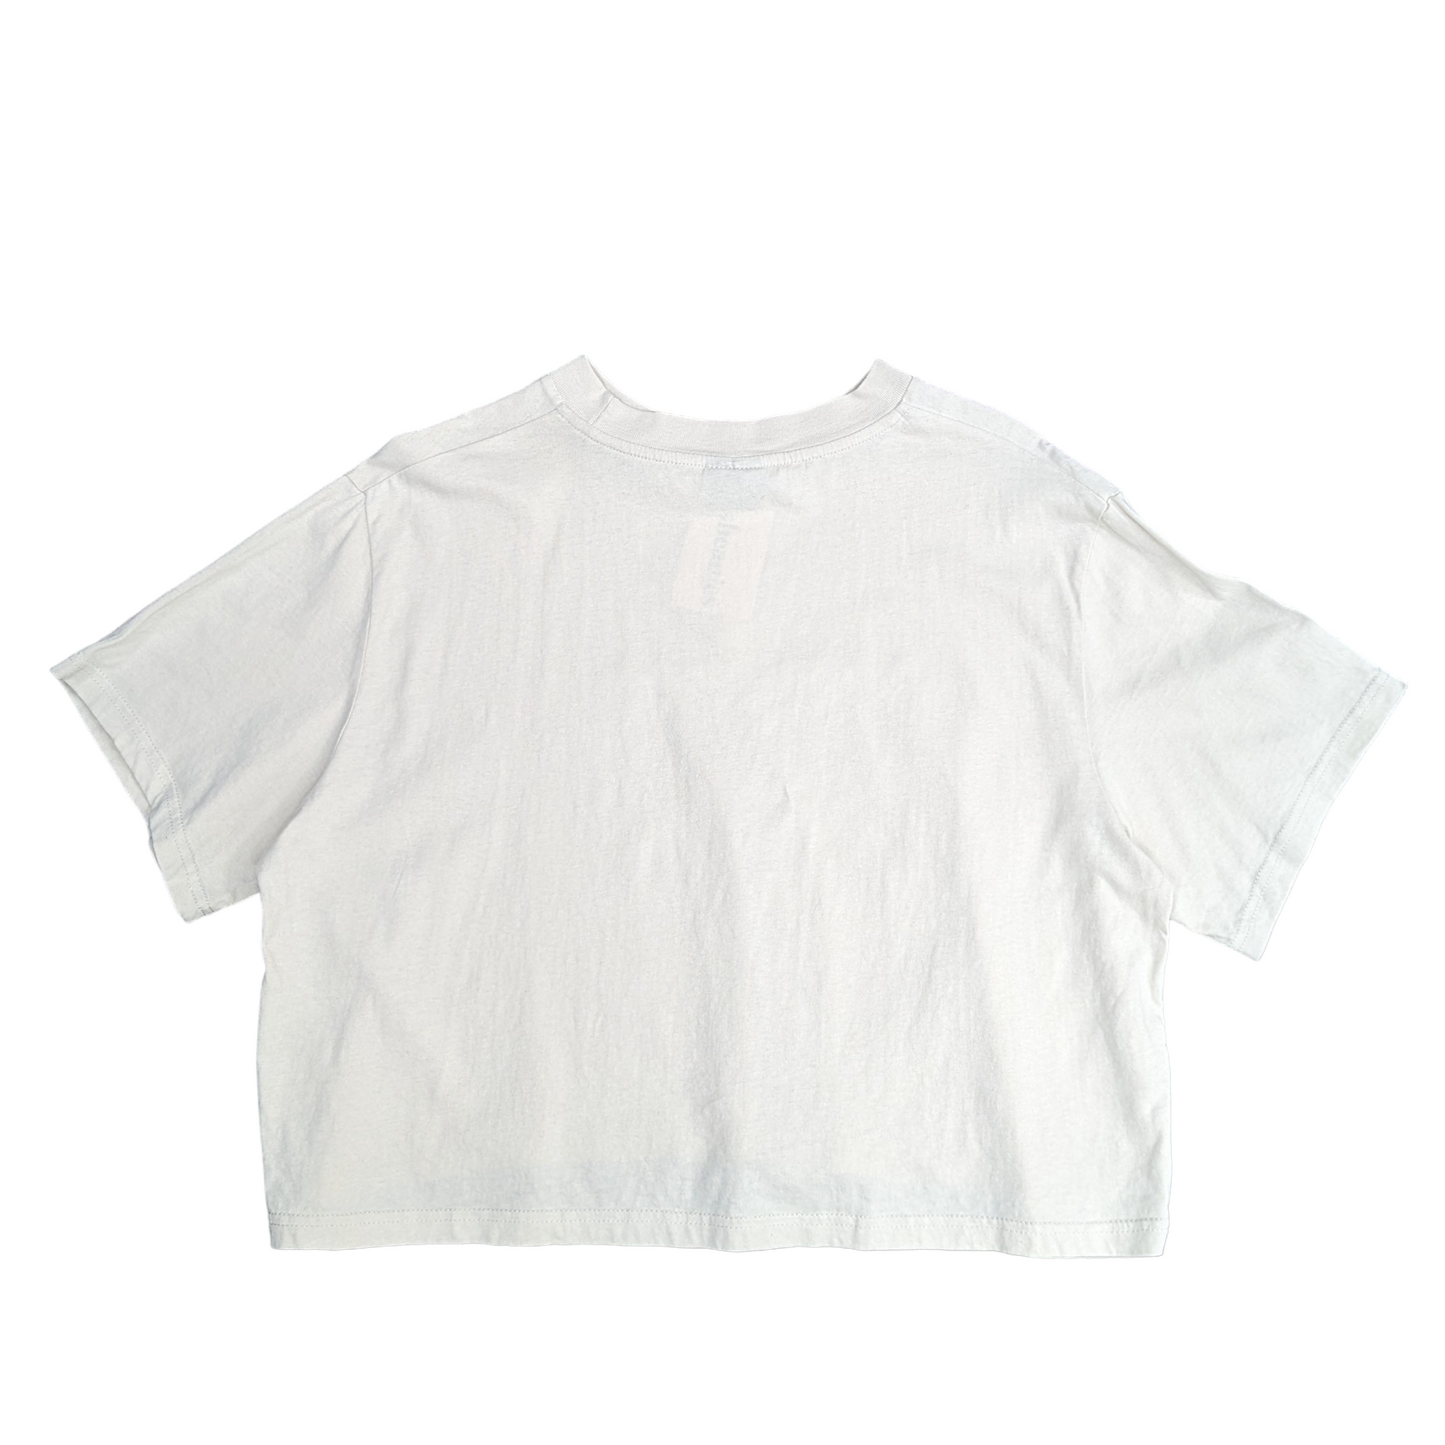 Stussy Cropped T-Shirt Size UK 12